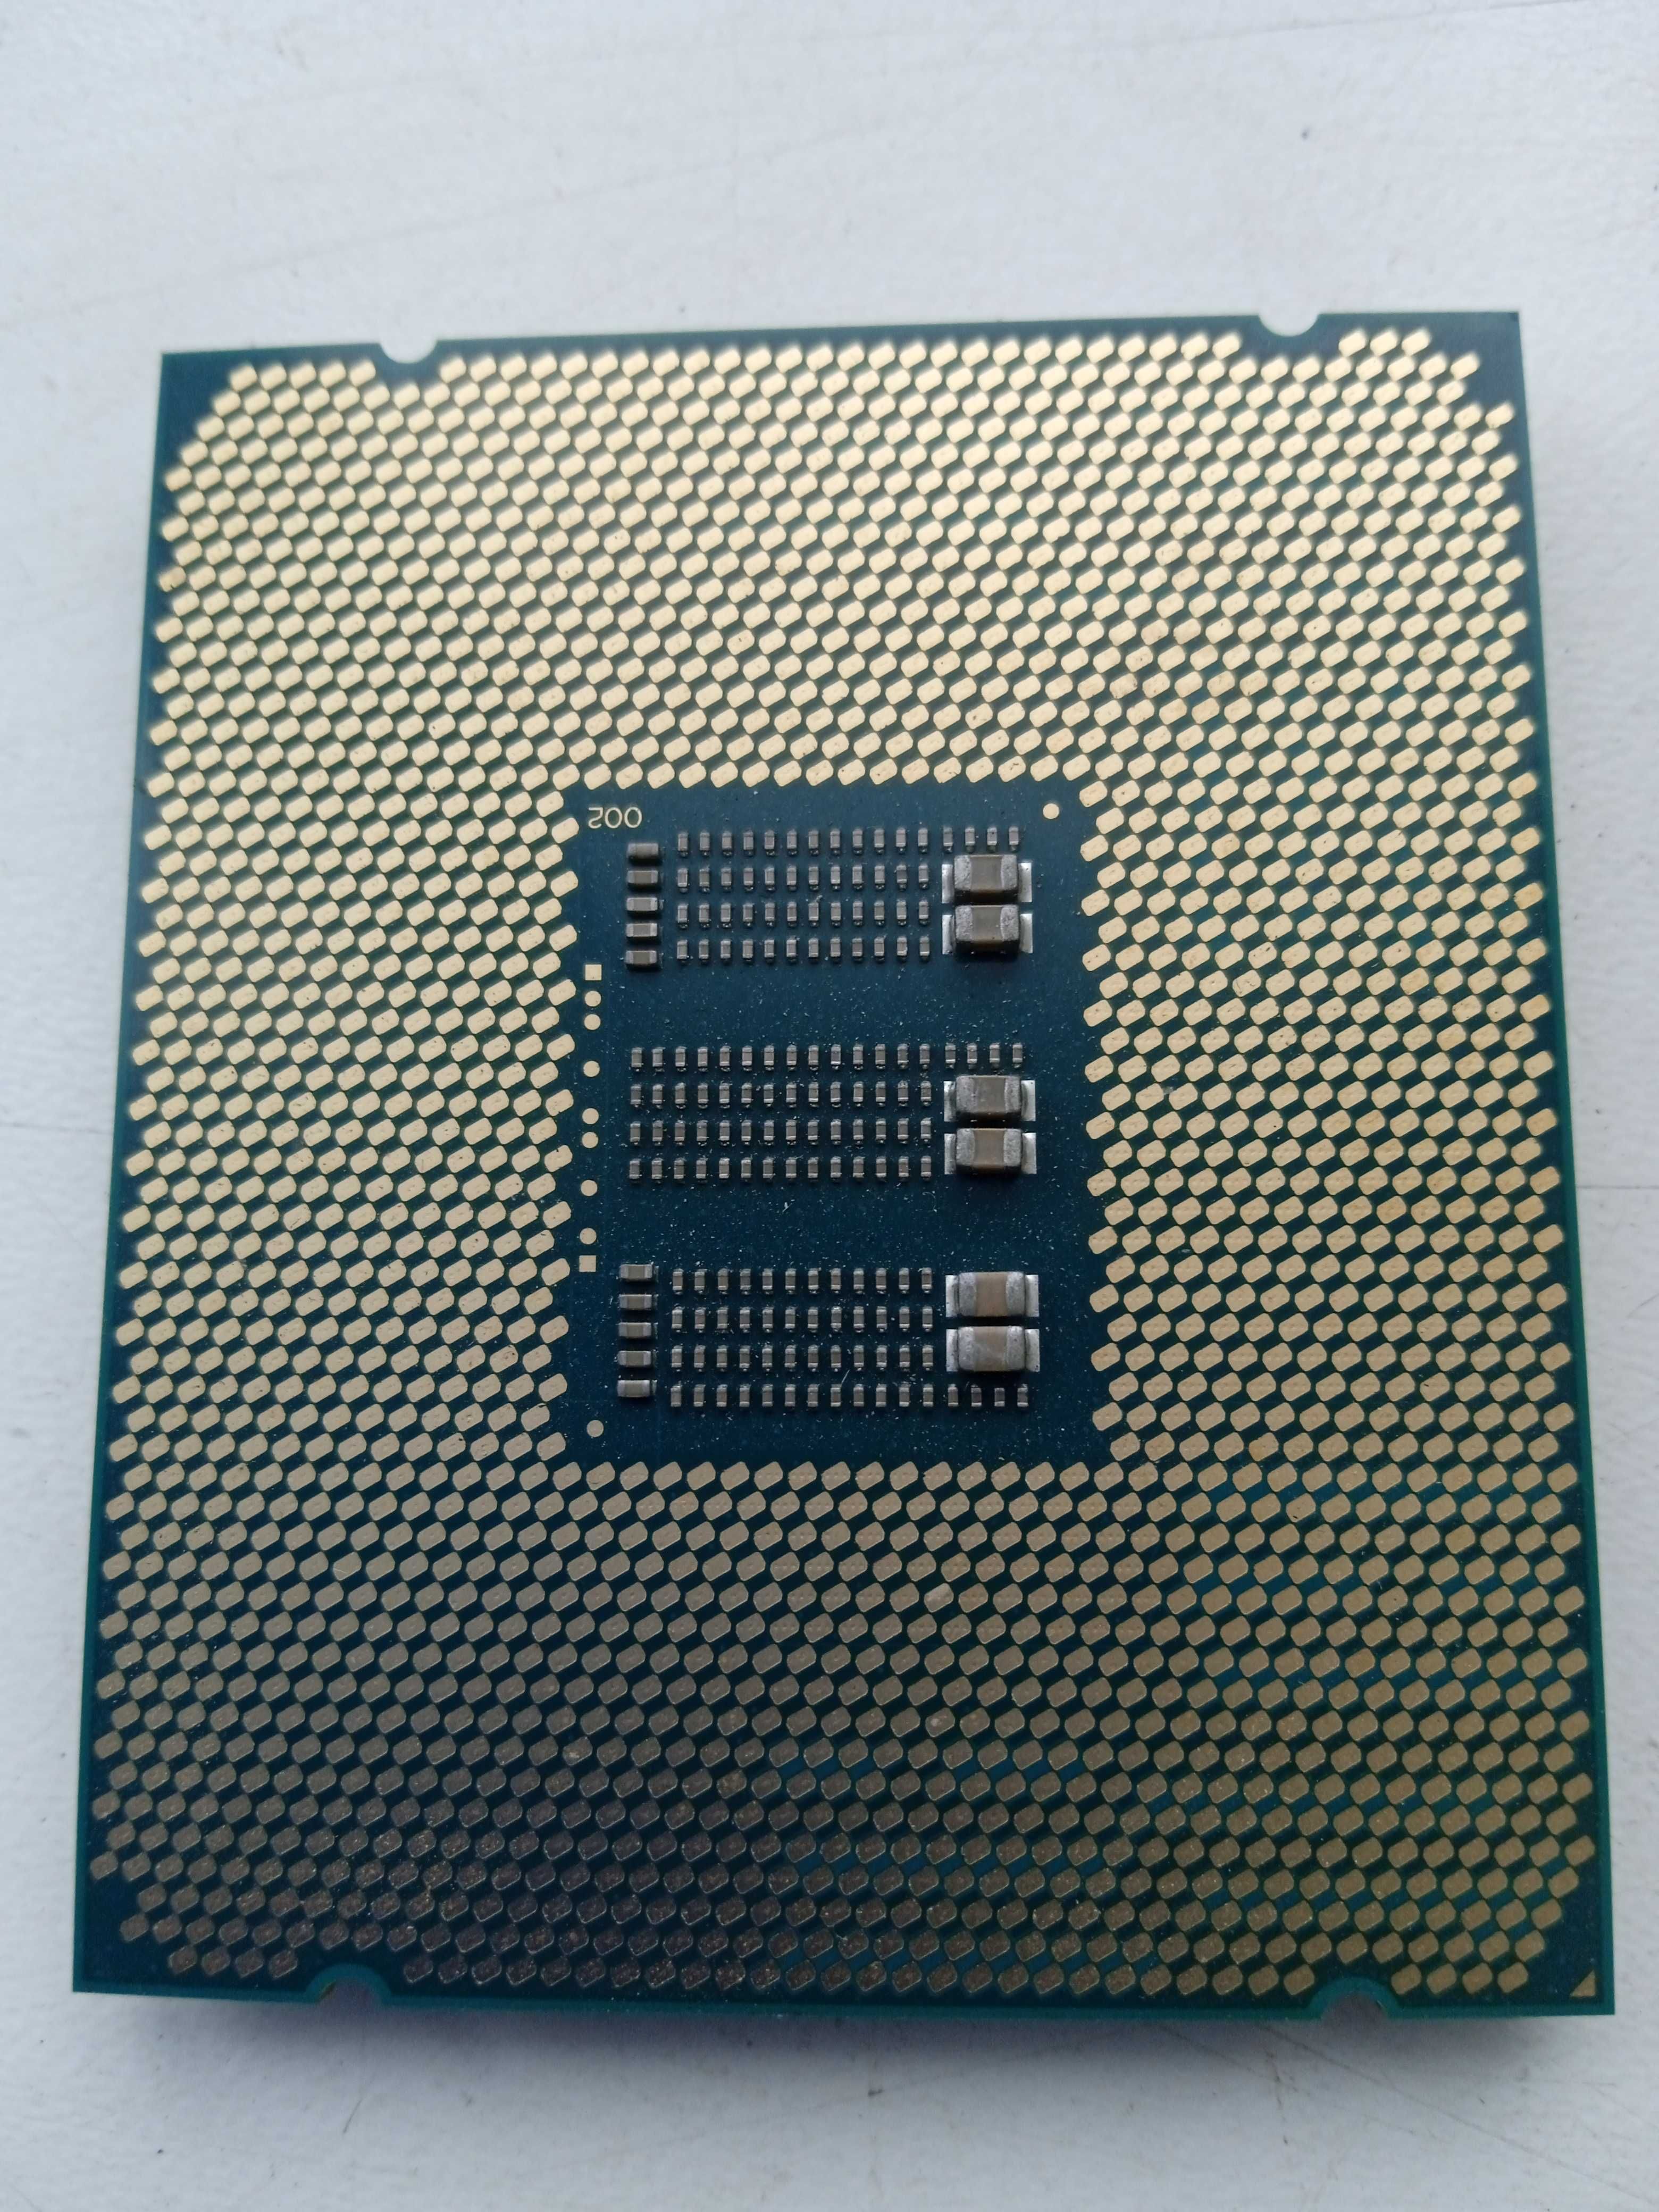 Серверный Процессор Intel Xeon E7-8867v4